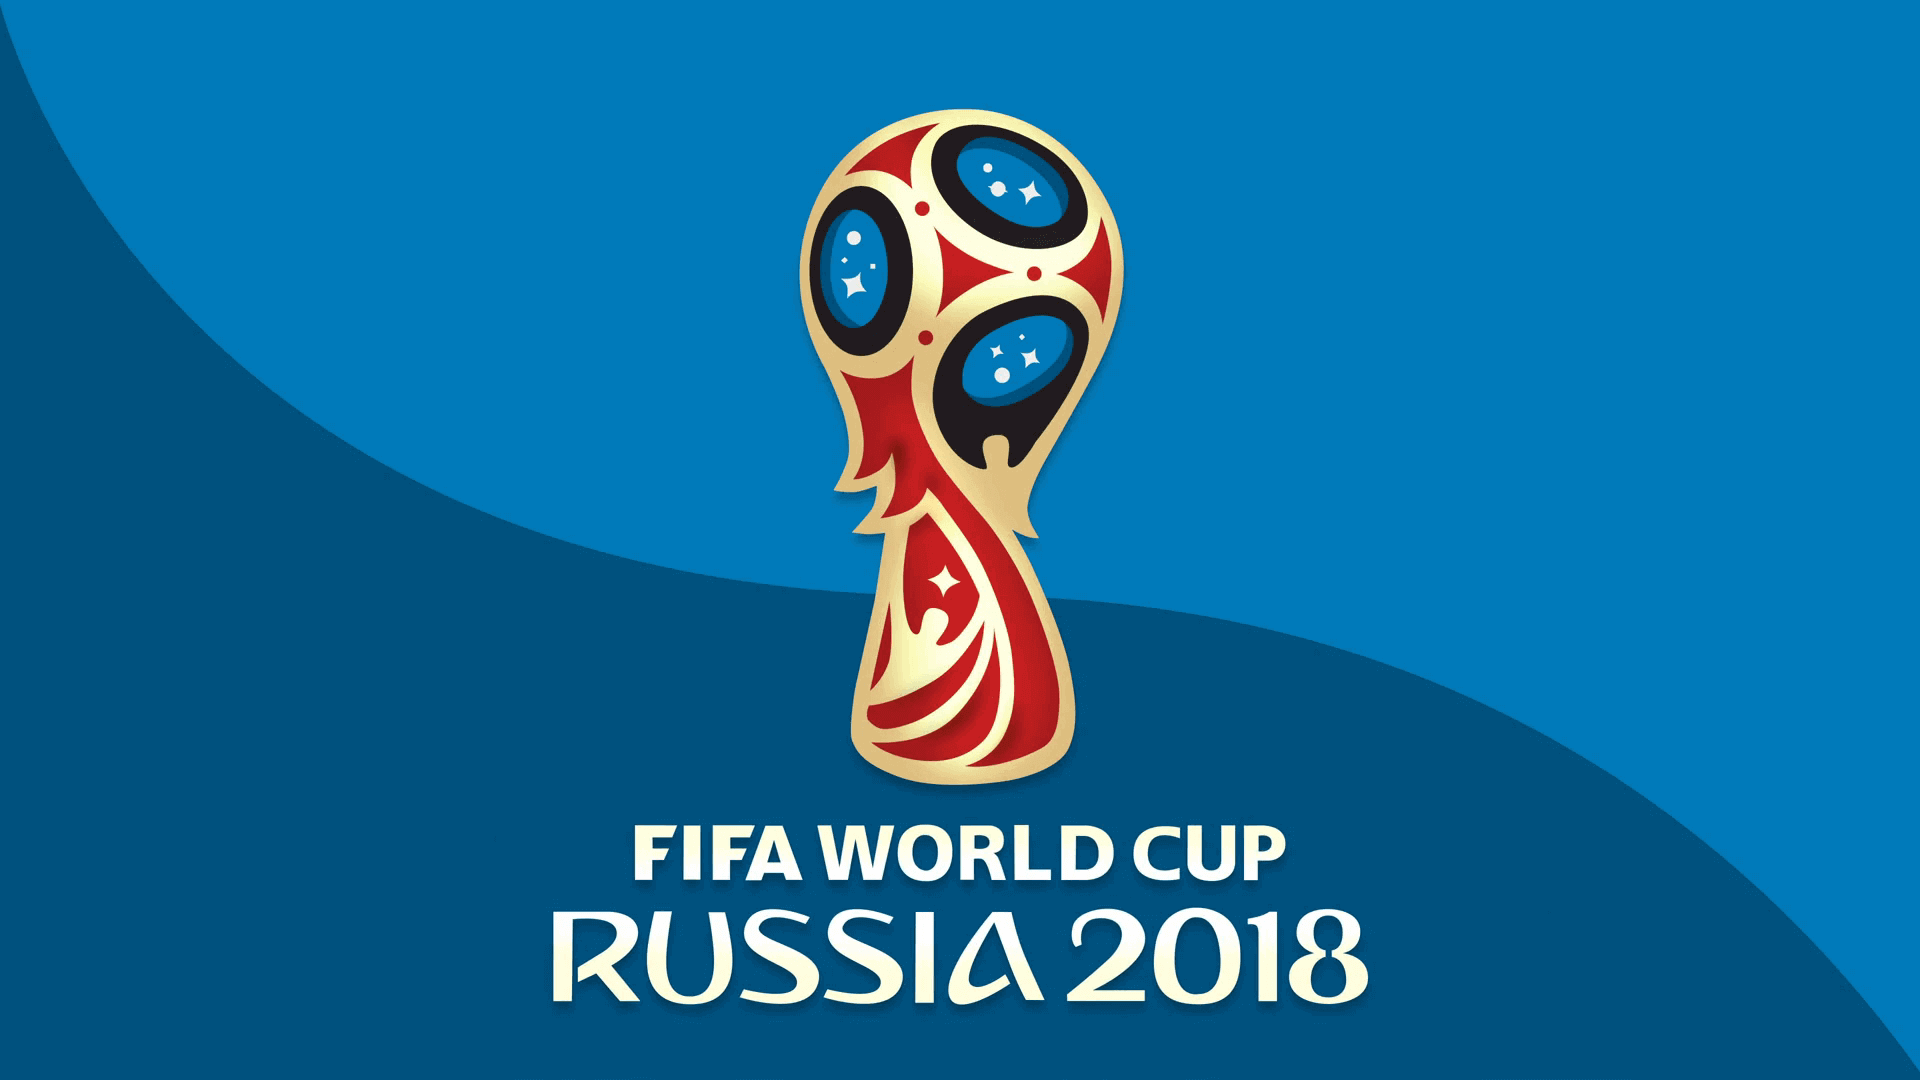 FIFA World Cup Russia 2018 emblem